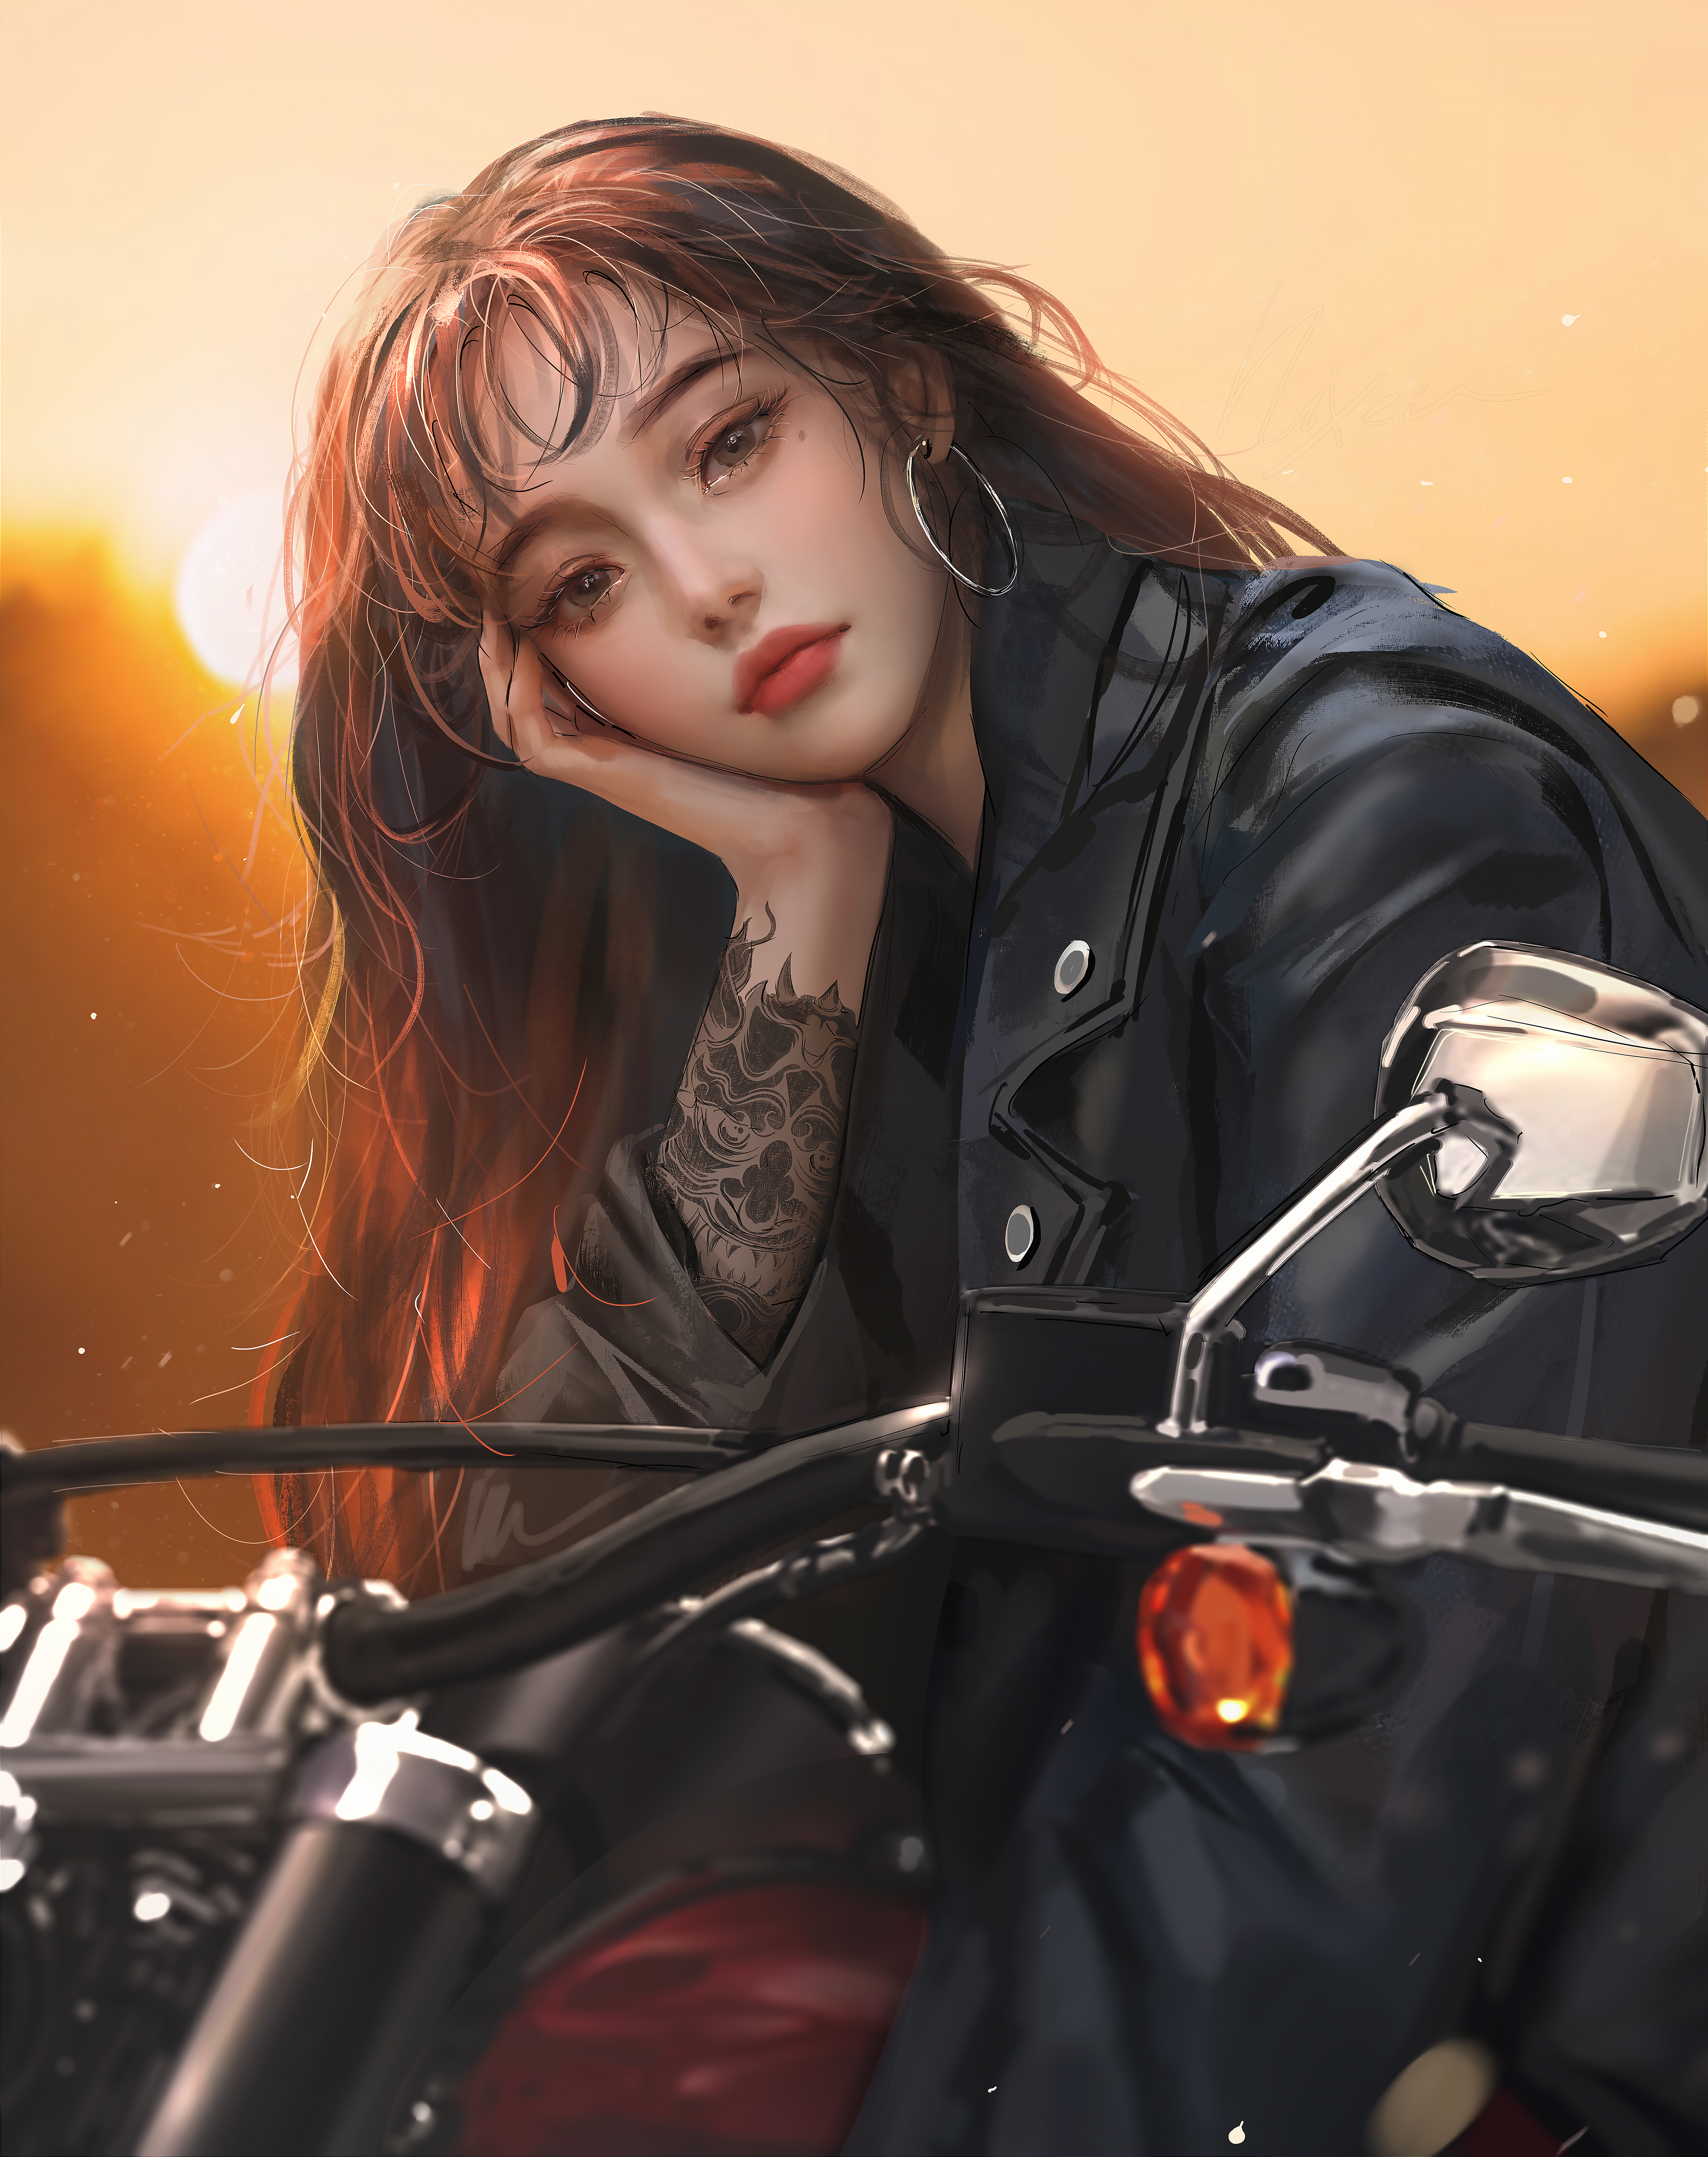 33+] Motorcycle Backgrounds - WallpaperSafari